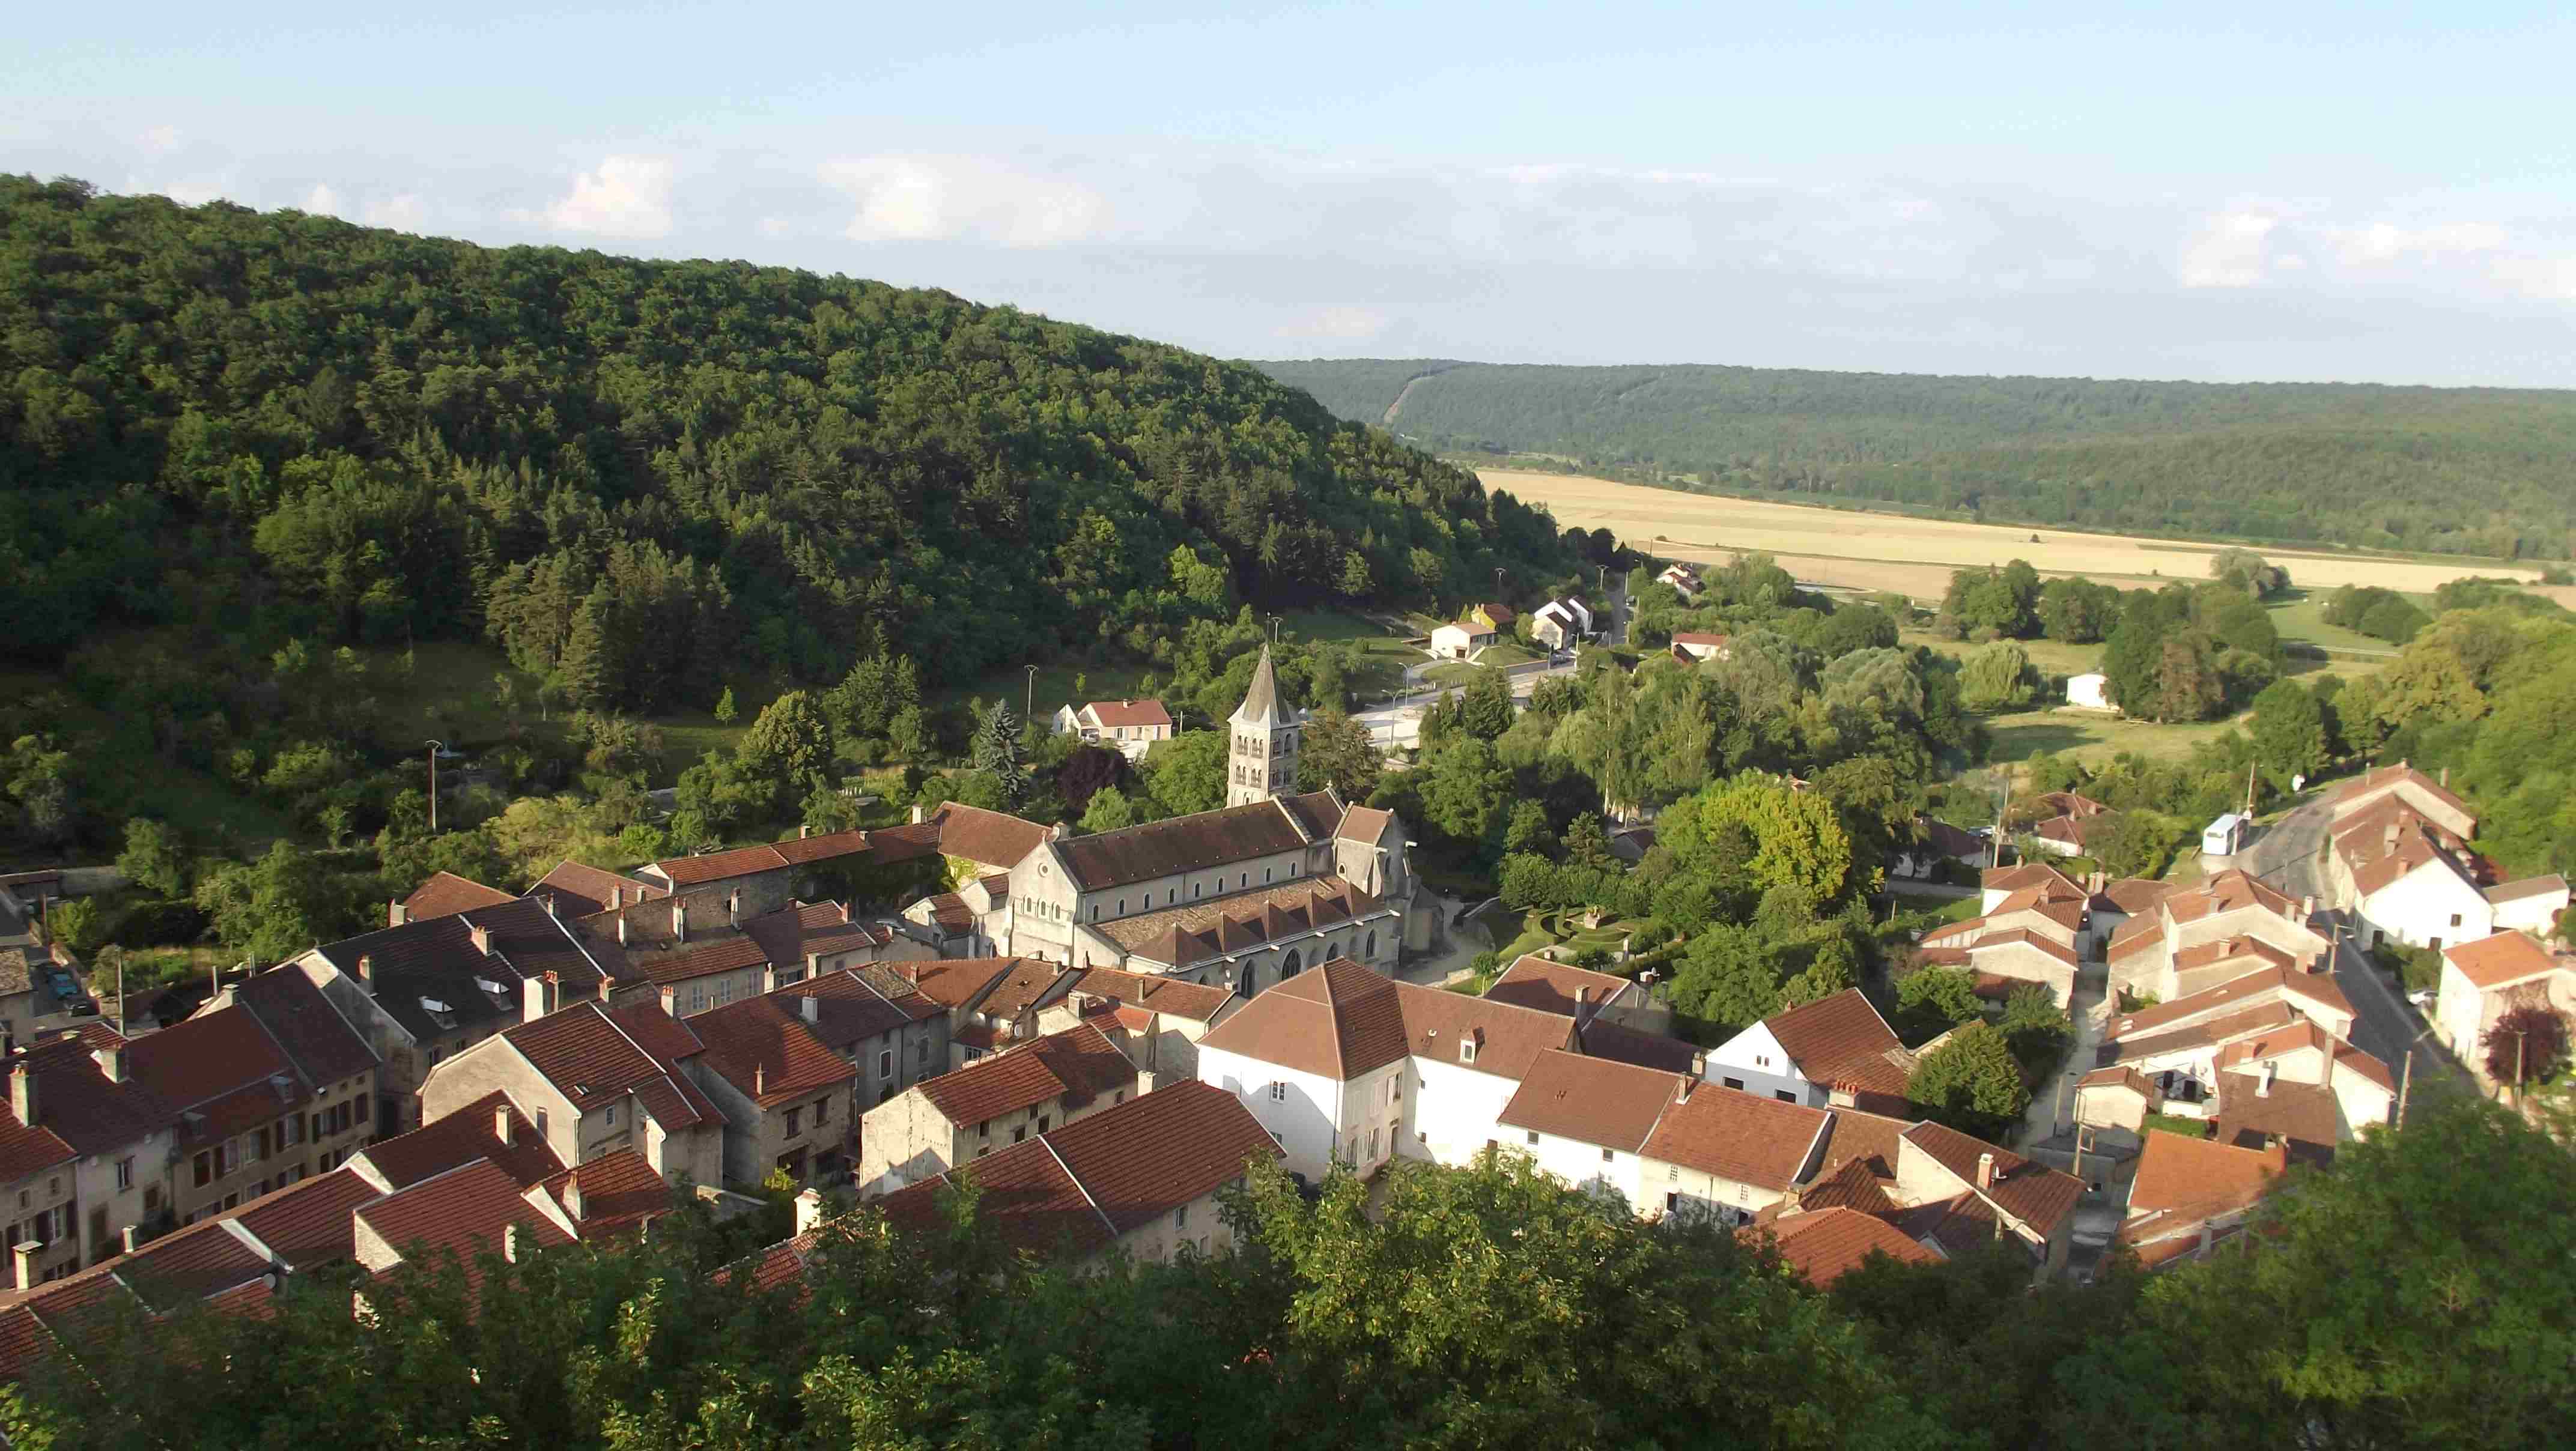 Vignory - 1 van de 6 'Petite cités de Caractère' in de Champagne-Ardenne